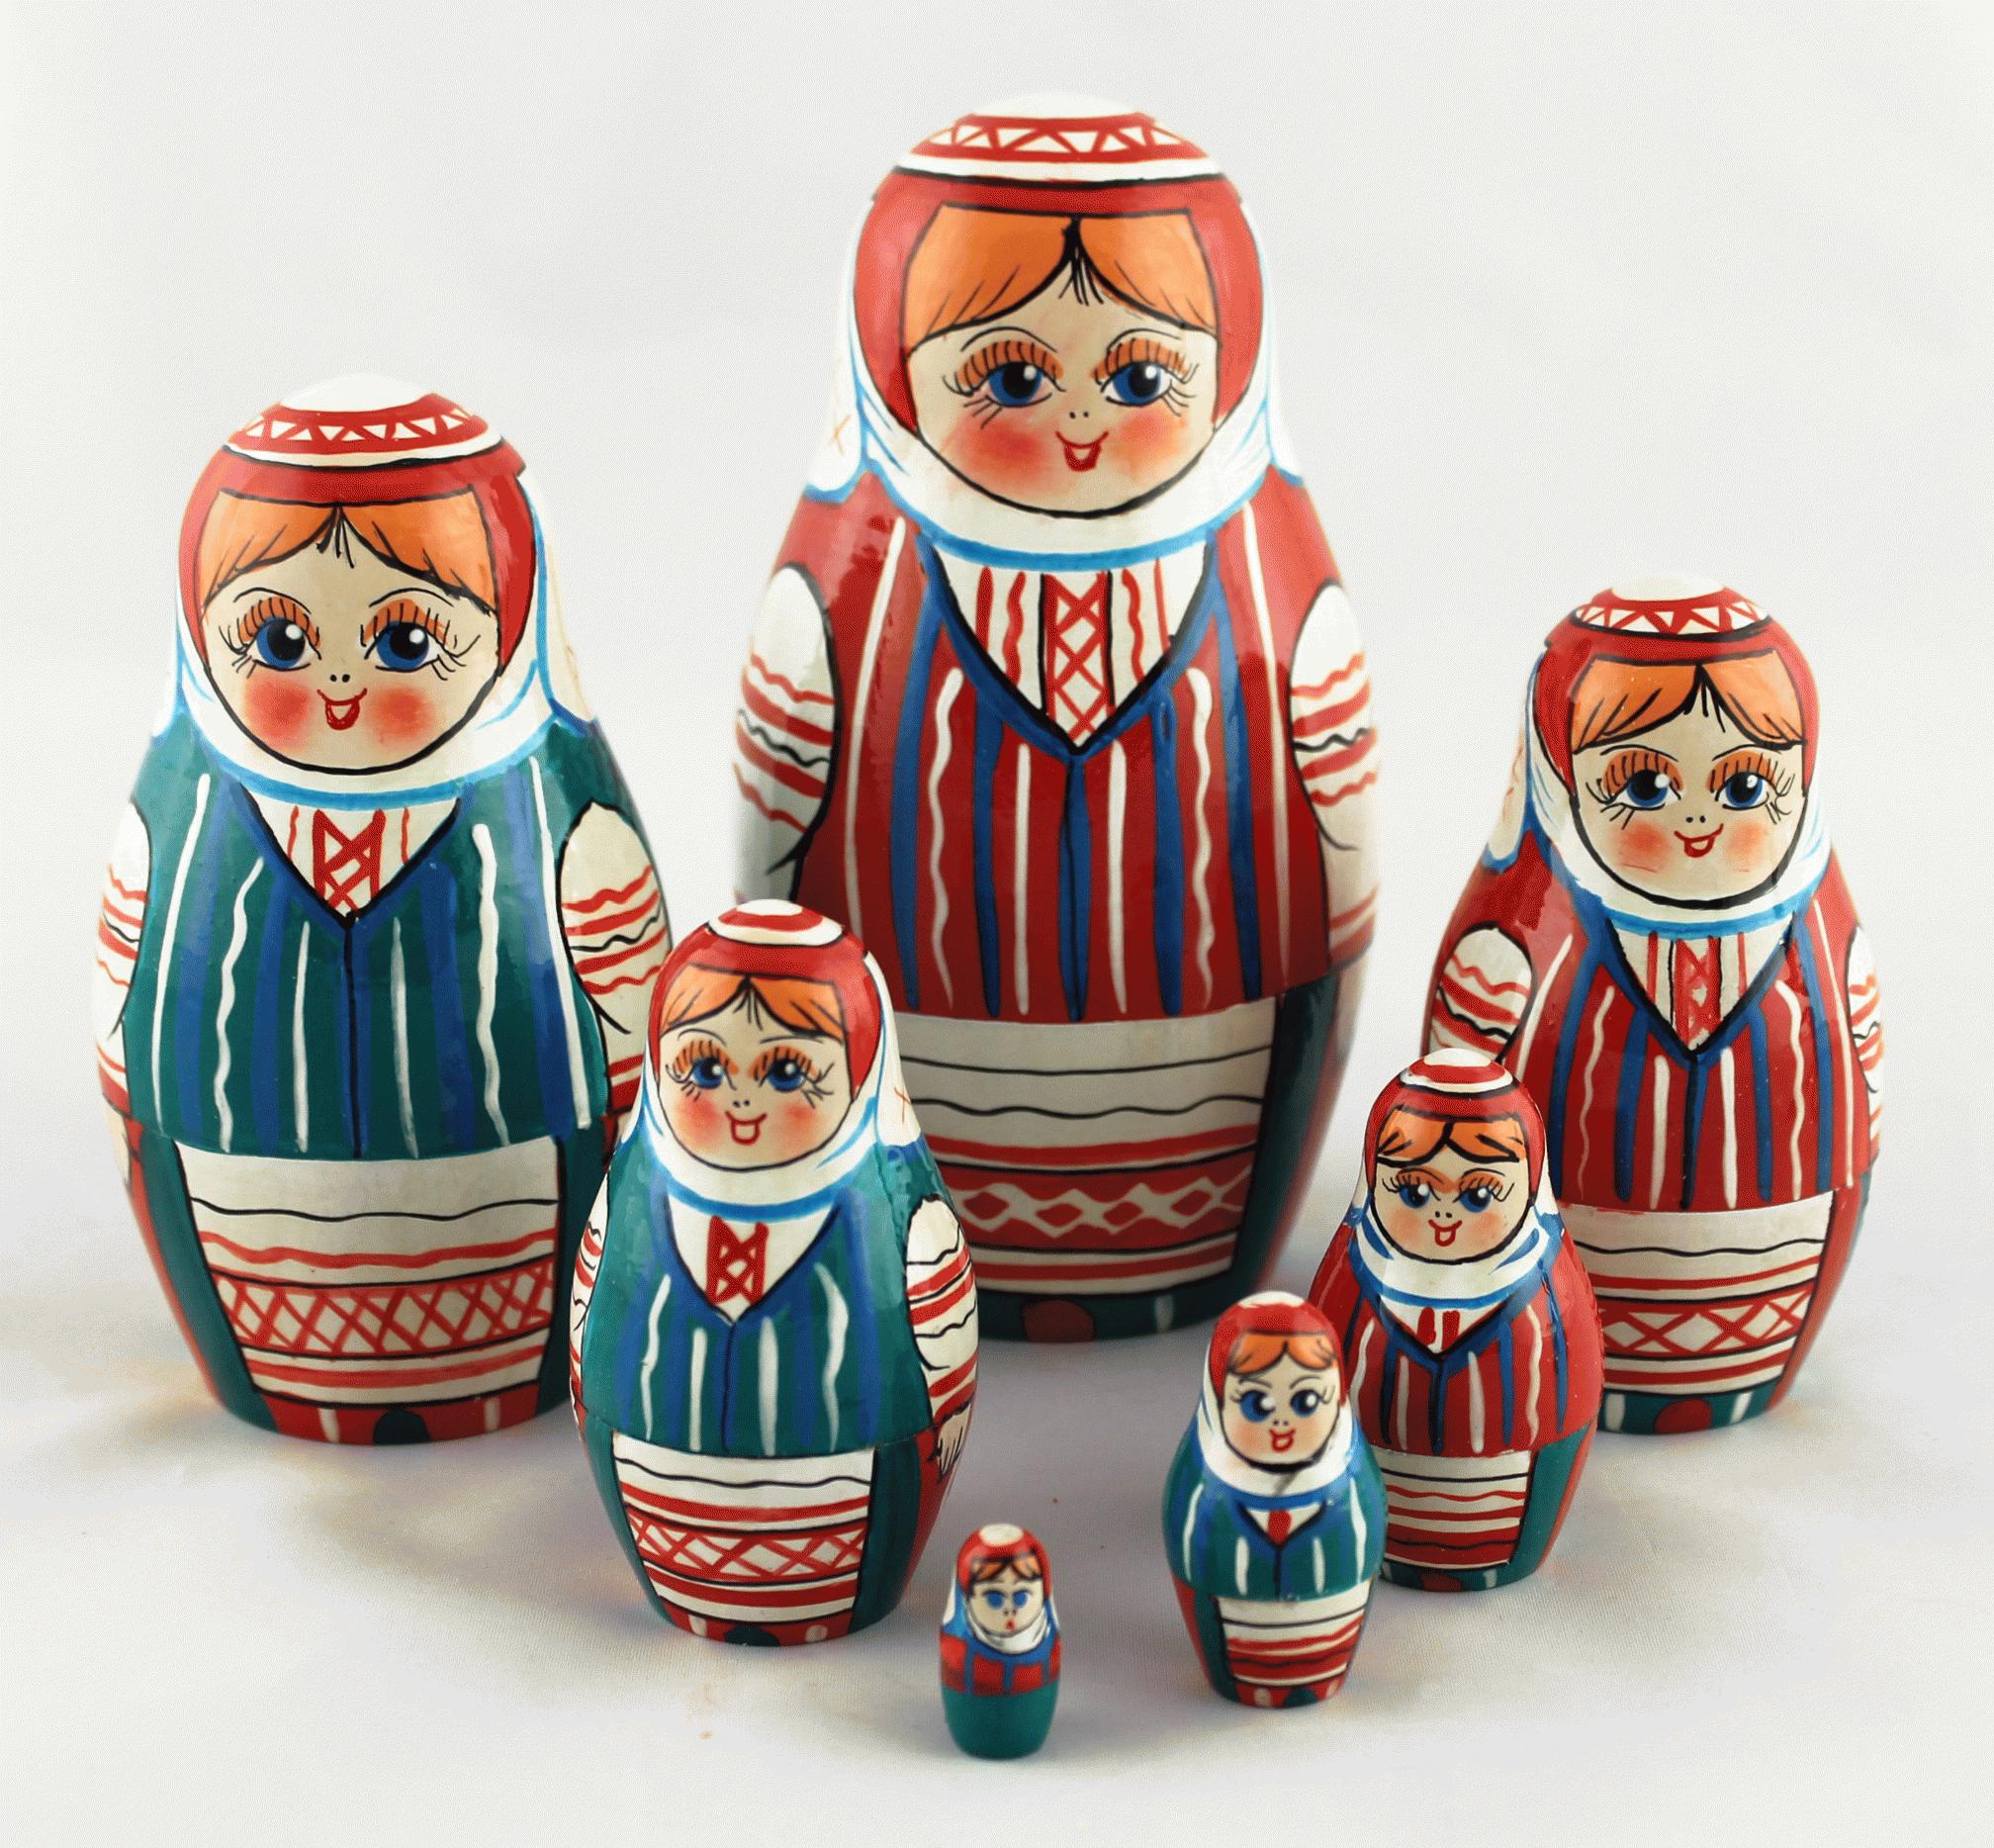 厂家直销 俄罗斯套娃手工艺品摆件 仿真人物套娃木质儿童玩具模型-阿里巴巴